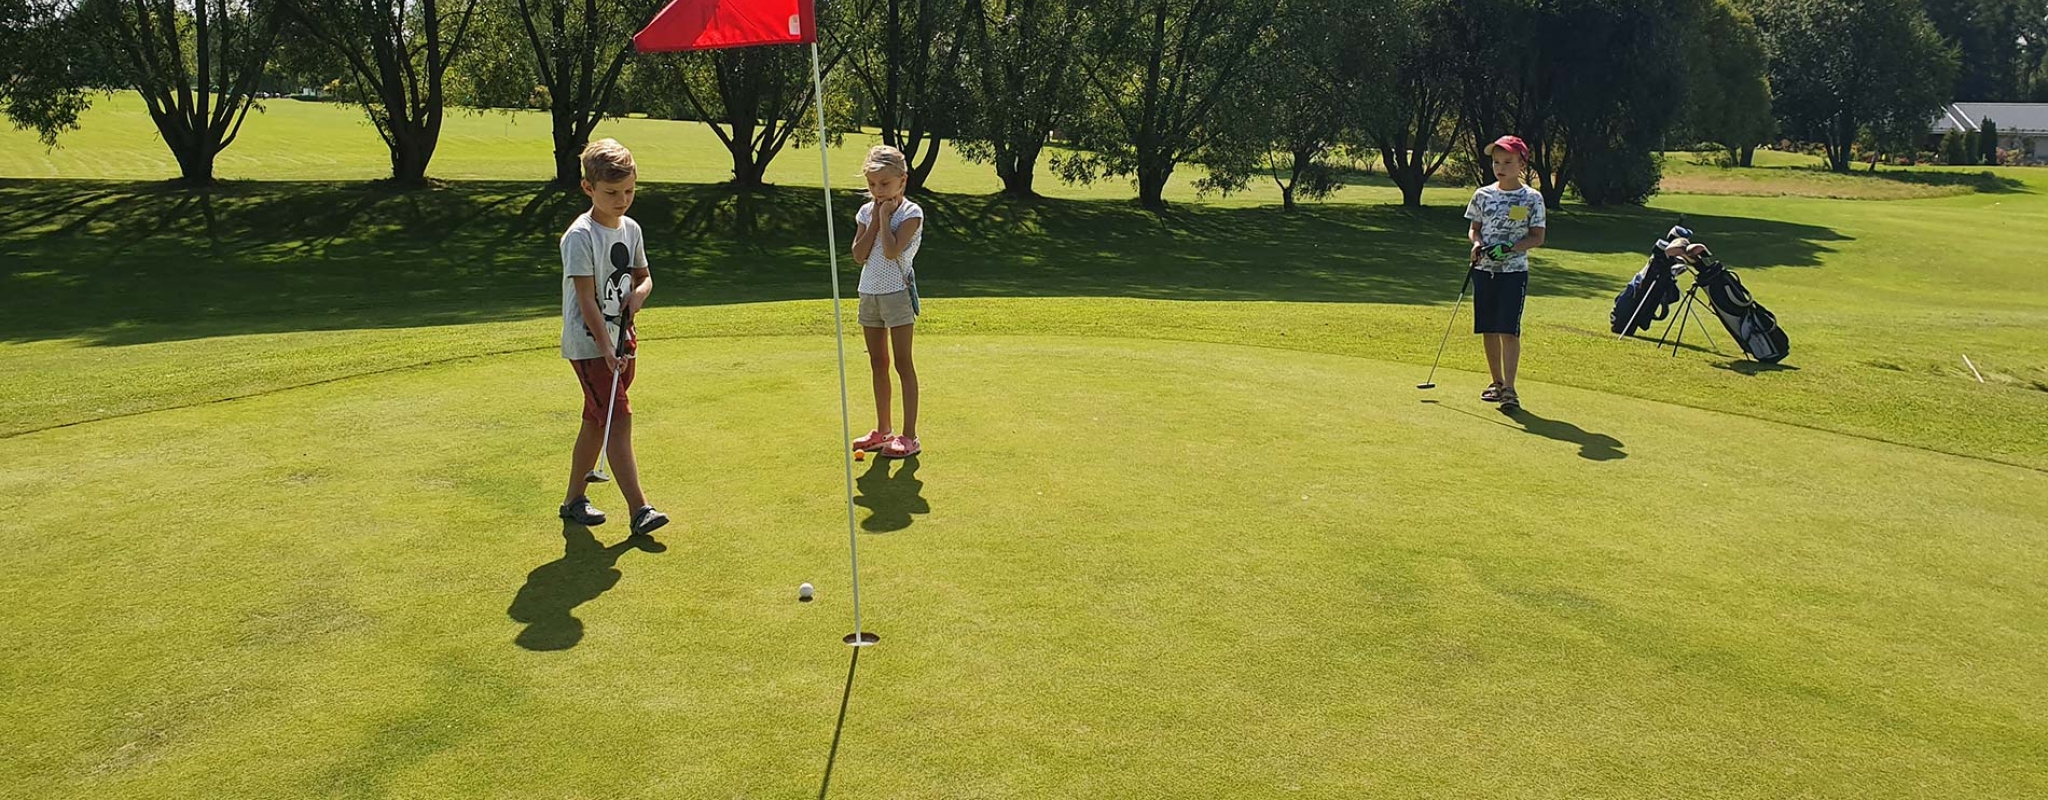 Golfa skola bērniem Avoti